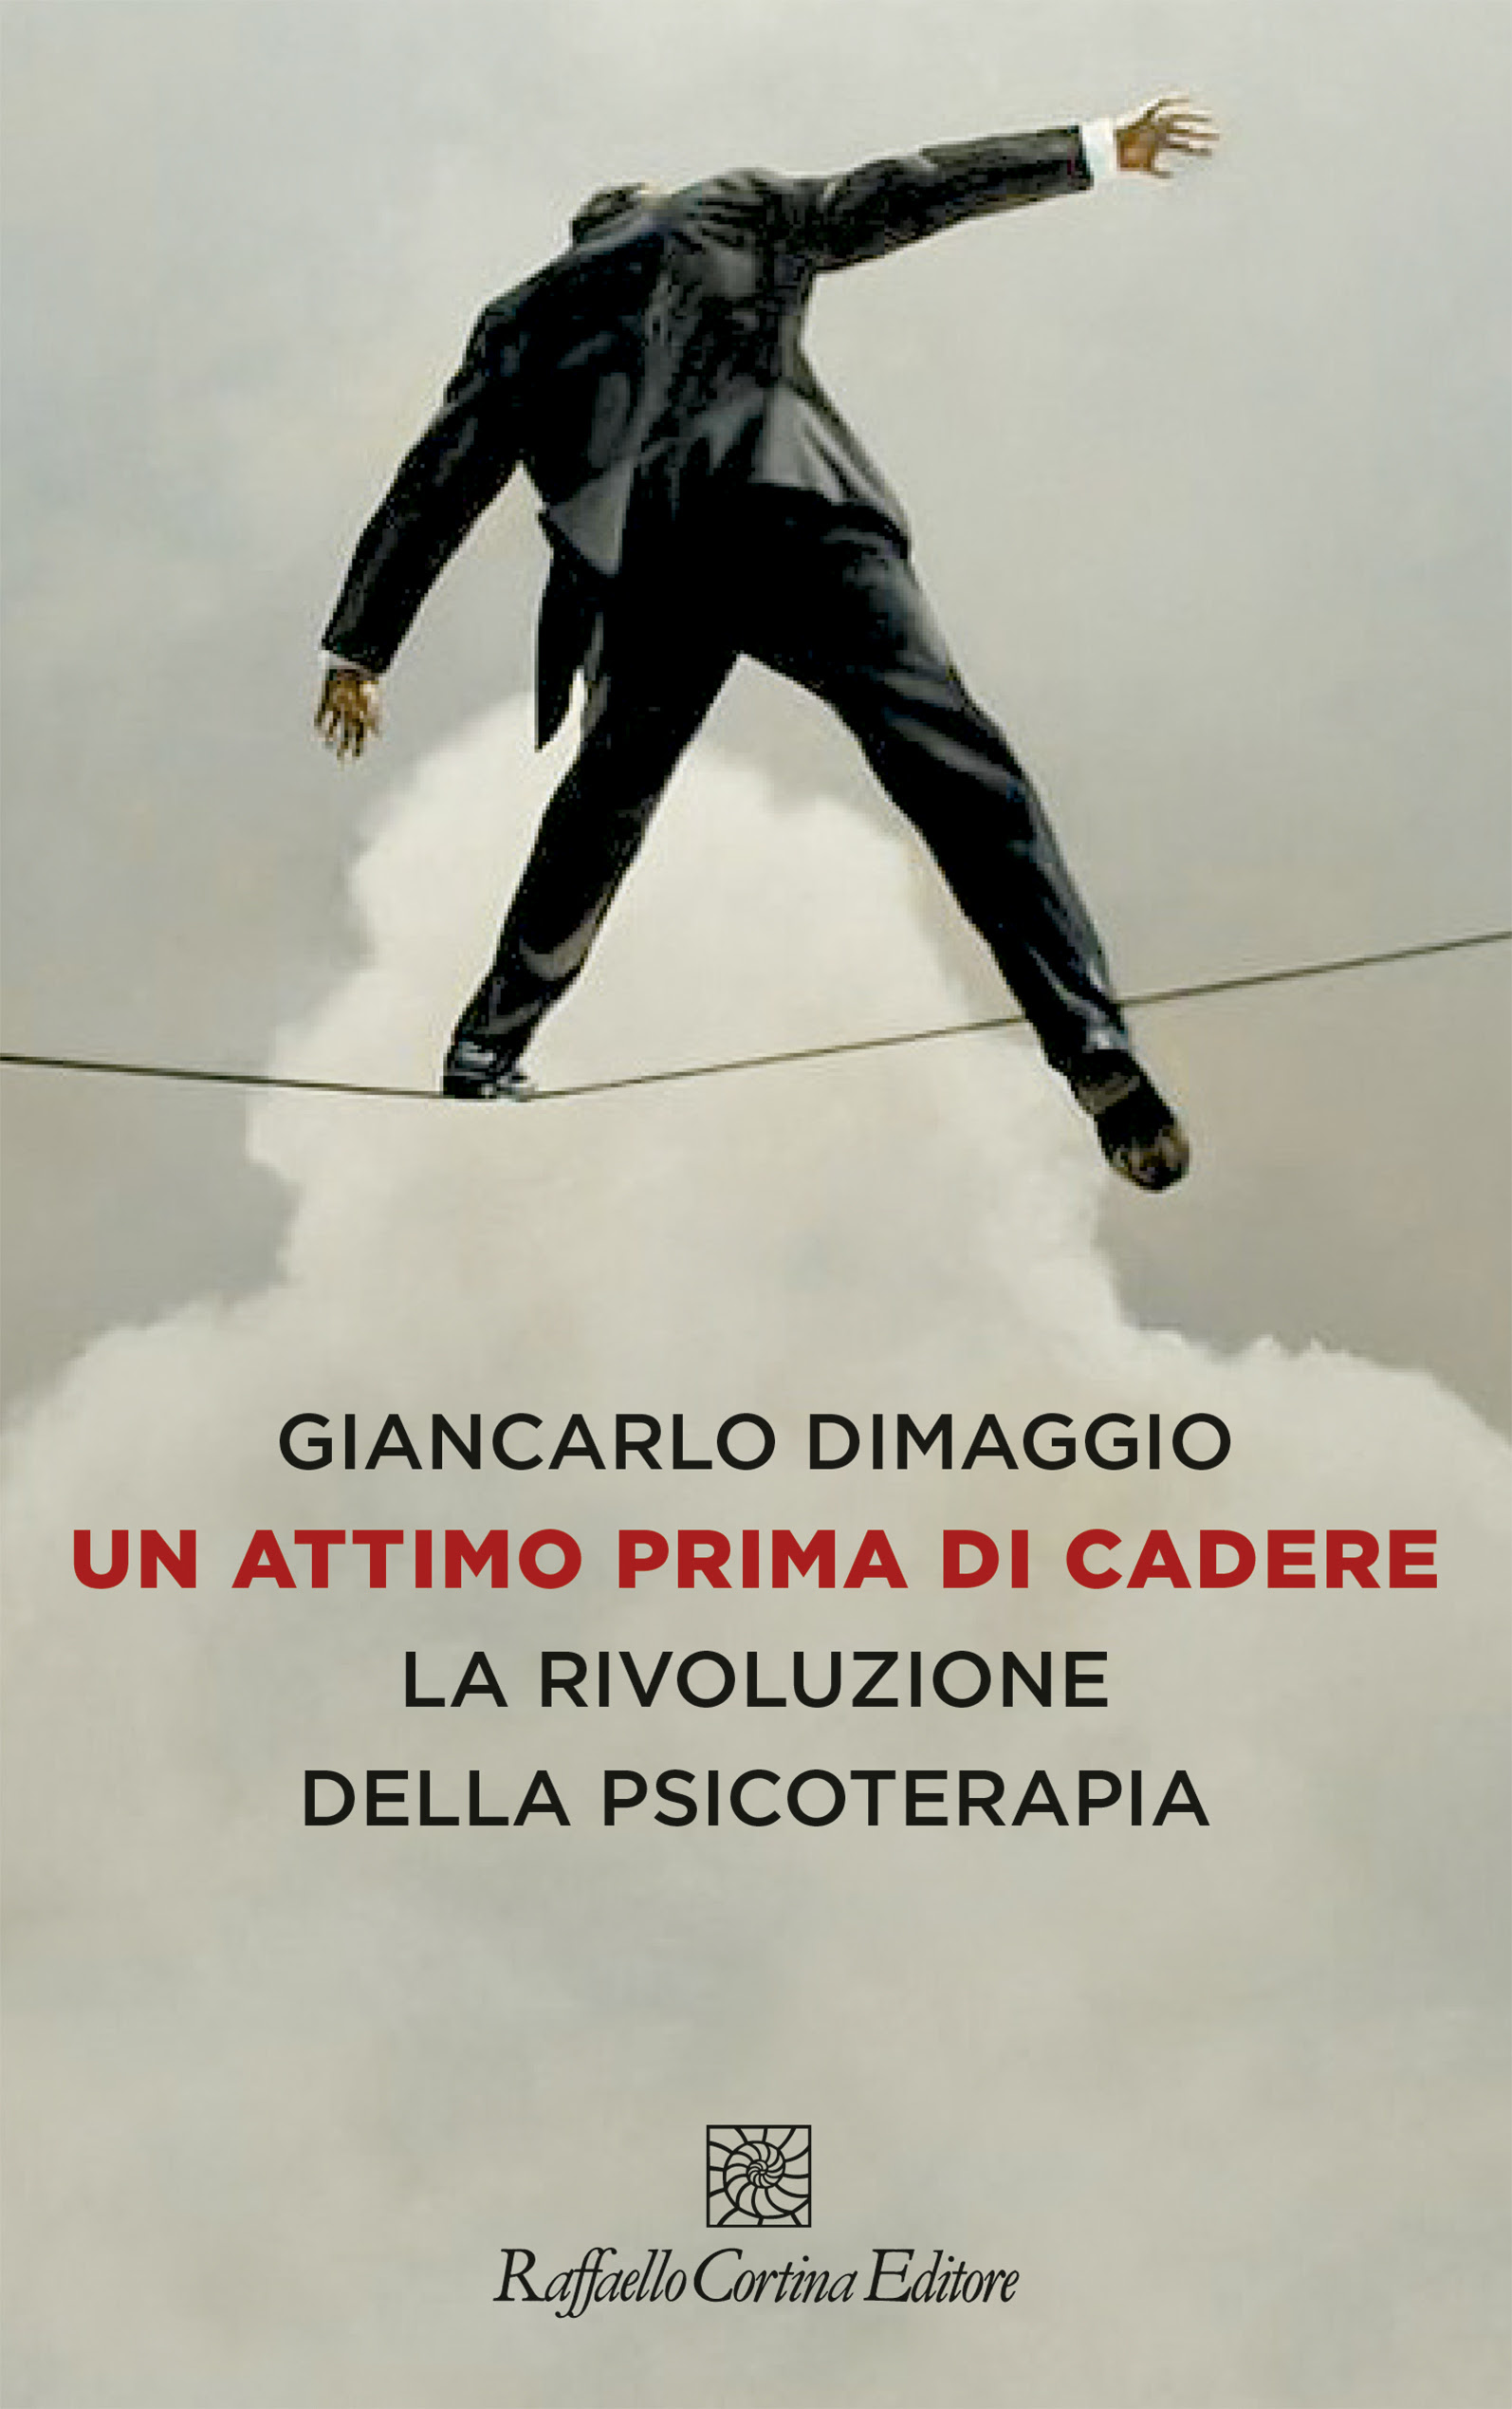 Giancarlo Dimaggio - Un attimo prima di cadere 